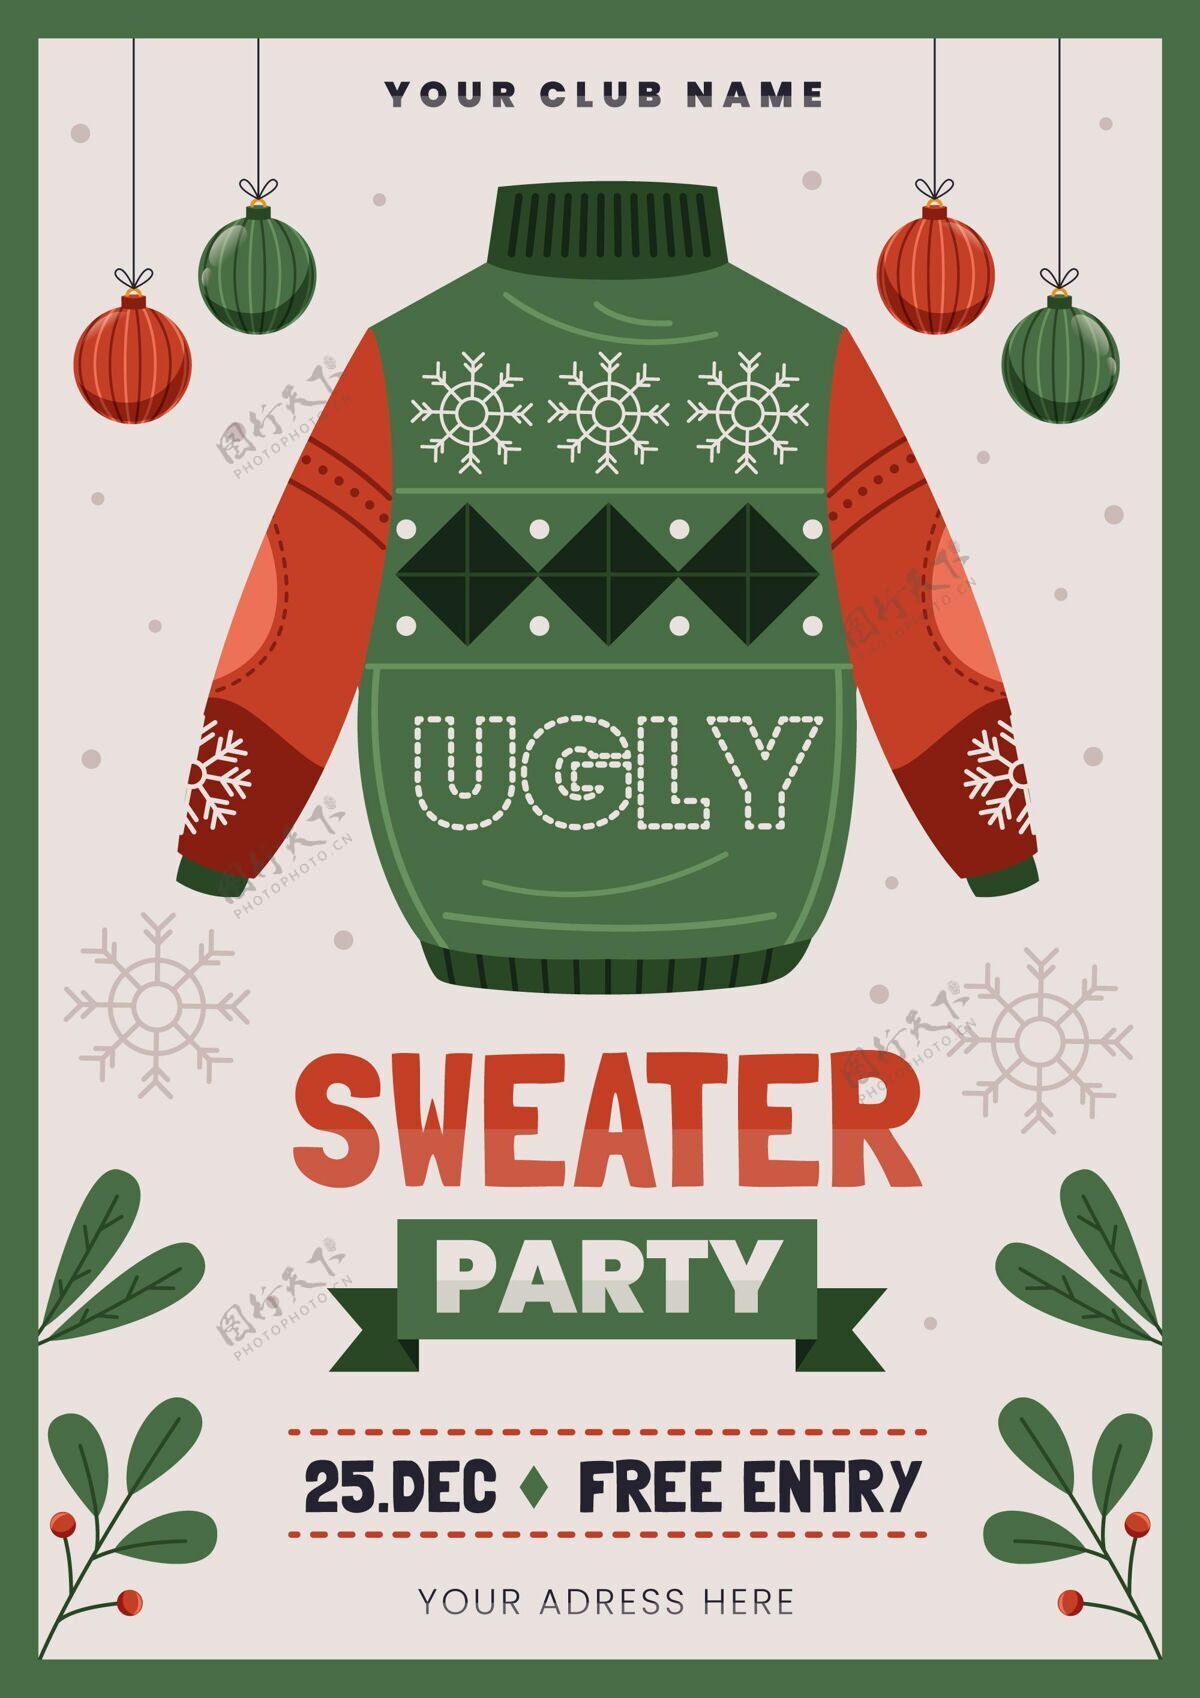 印刷丑陋的毛衣党邀请模板圣诞节毛衣模板